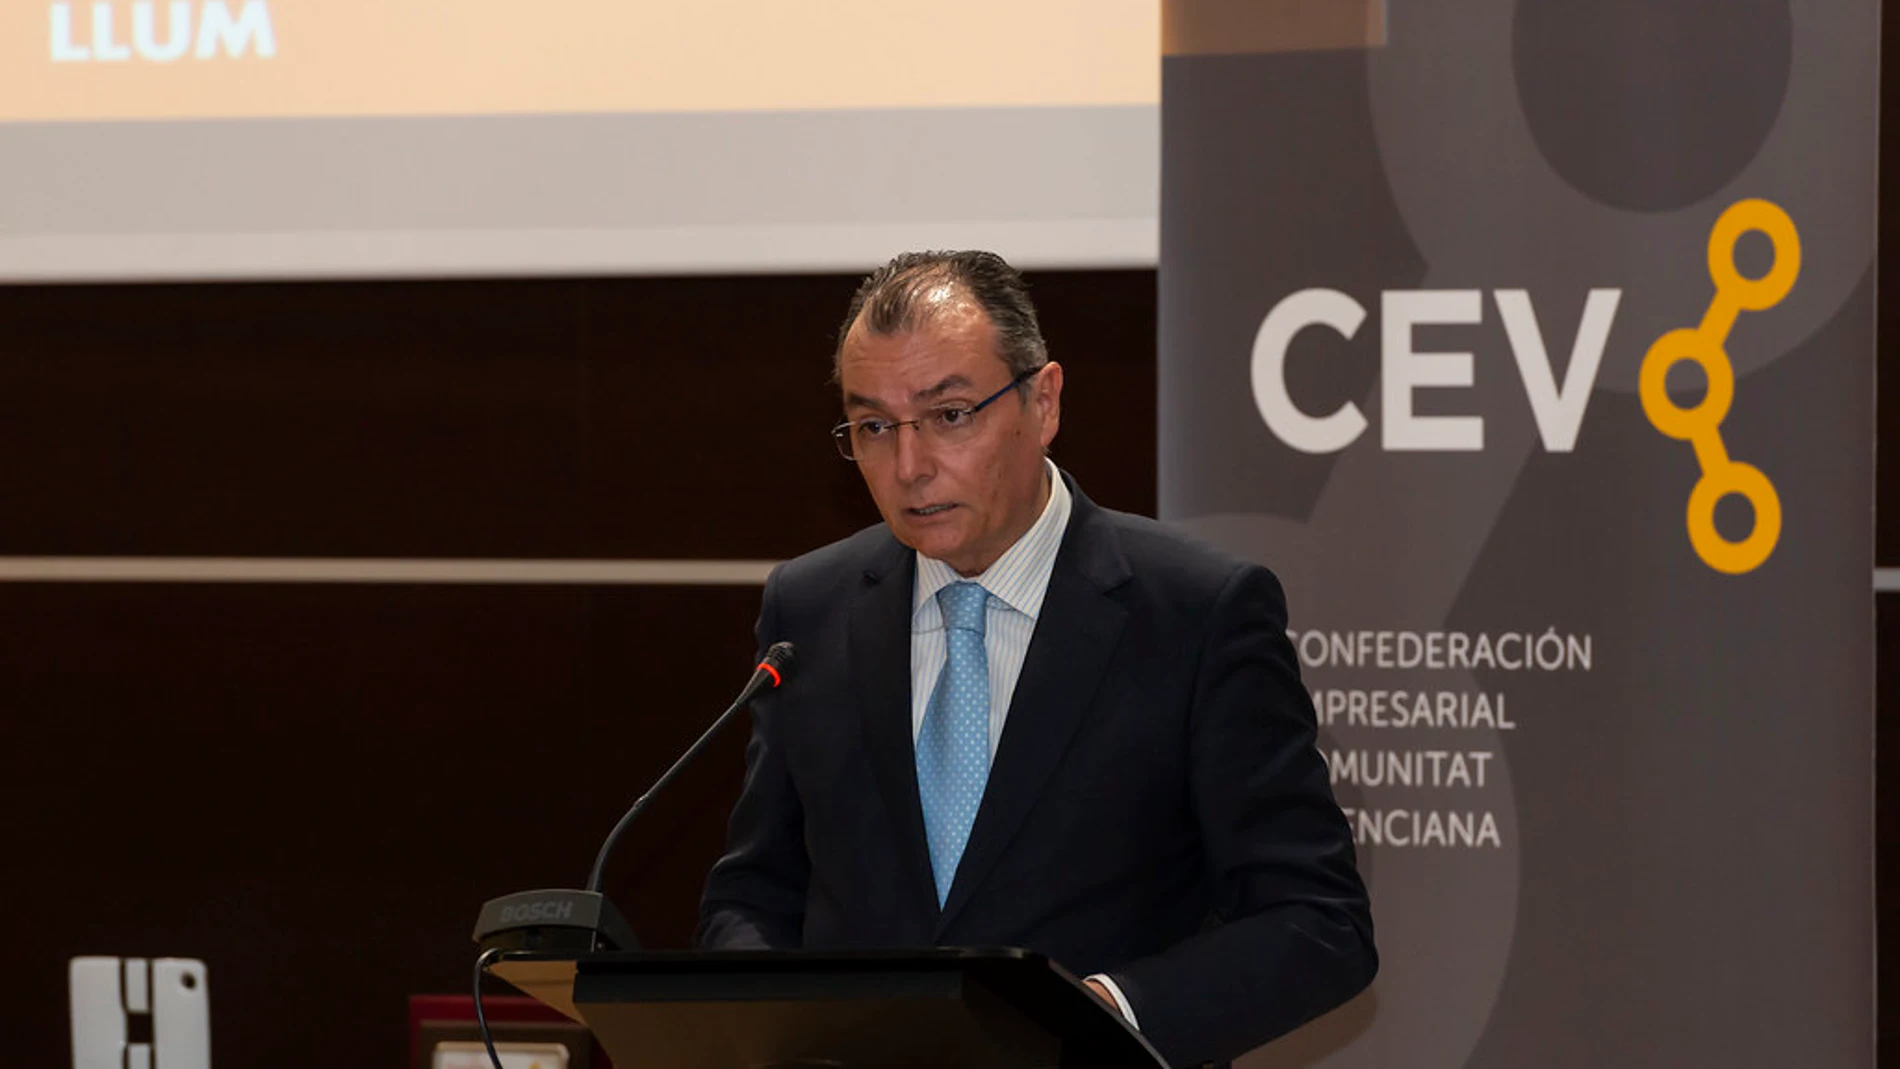 El presidente de la Confederación Empresarial de la Comunitat Valenciana (CEV), Salvador Navarro